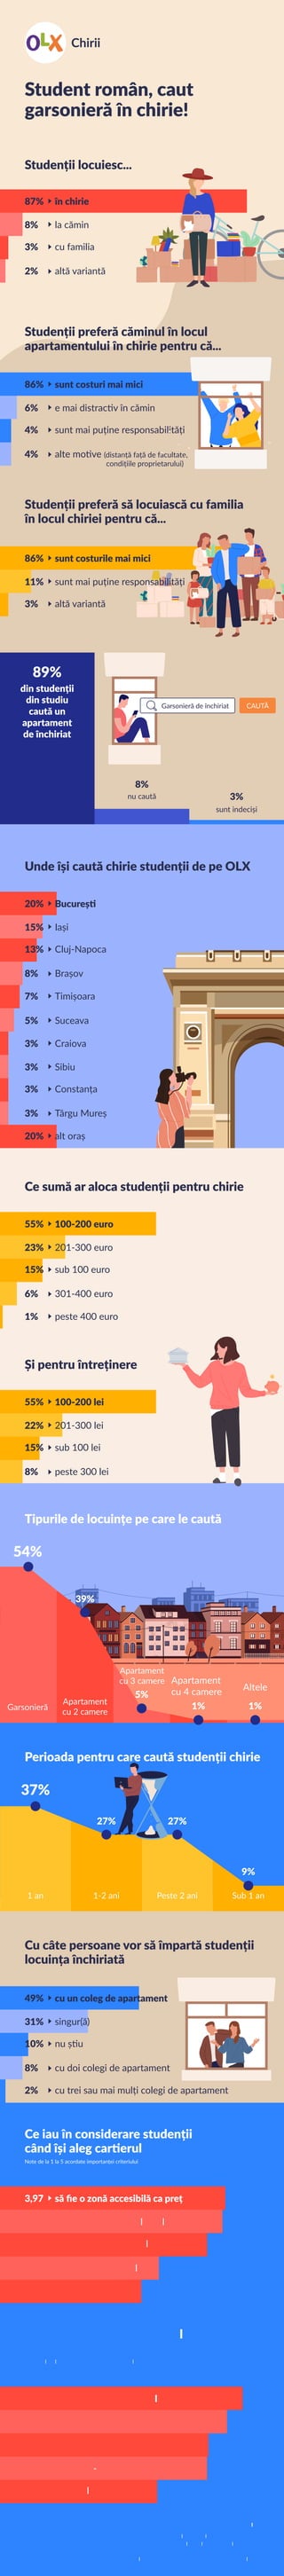 Ce sumă ar aloca studenții pentru chirie
23%
55%
1%
6%
15%
201-300 euro
100-200 euro
peste 400 euro
301-400 euro
sub 100 euro
Și pentru întreținere
22%
55%
8%
15%
201-300 lei
100-200 lei
peste 300 lei
sub 100 lei
Student român, caut
garsonieră în chirie!
Studenții locuiesc...
Studenții preferă căminul în locul
apartamentului în chirie pentru că...
8%
87%
2%
3%
la cămin
în chirie
altă variantă
cu familia
Sursa: www.olx.ro
Studiul a fost realizat în septembrie 2019,
prin chestionar online aplicat vizitatorilor categoriei
OLX Apartamente și garsoniere de închiriat.
Eșantionul cuprinde 670 de respondenți din toate regiunile țării.
6%
86%
4%
4%
e mai distractiv în cămin
sunt costuri mai mici
alte motive (distanță față de facultate,
condițiile proprietarului)
sunt mai puține responsabilități
Studenții preferă să locuiască cu familia
în locul chiriei pentru că...
11%
86%
3%
sunt mai puține responsabilități
sunt costurile mai mici
altă variantă
Unde își caută chirie studenții de pe OLX
15%
20%
7%
8%
13%
Iași
București
Timișoara
Brașov
Cluj-Napoca
3%
3%
20%
3%
3%
Sibiu
Craiova
alt oraș
Târgu Mureș
Constanța
5% Suceava
Cu câte persoane vor să împartă studenții
locuința închiriată
31%
49%
8%
10%
singur(ă)
cu un coleg de apartament
cu doi colegi de apartament
nu știu
2% cu trei sau mai mulți colegi de apartament
Ce iau în considerare studenții
când își aleg cartierul
3,92
3,97
2,80
3,65
să ﬁe aproape de mijloacele de transport
să ﬁe o zonă accesibilă ca preț
să ﬁe o zonă centrală
Note de la 1 la 5 acordate importanței criteriului
să ﬁe aproape de facultate
2,49 să ﬁe aproape de parcuri
Ce așteptări au studenții de la
proprietatea închiriată
4,00
4,26
3,65
3,67
să aibă un proprietar prietenos
să aibă costuri rezonabile
să ﬁe într-o zonă bună
Note de la 1 la 5 acordate importanței criteriului
să ofere un confort sporit
2,77 să ﬁe o locuință nouă
89%
din studenții
din studiu
caută un
apartament
de închiriat
8%
nu caută 3%
sunt indeciși
Tipurile de locuințe pe care le caută
54%
39%
5%
1% 1%Garsonieră
Apartament
cu 2 camere
Apartament
cu 3 camere
37%
27% 27%
9%
1 an 1-2 ani Peste 2 ani Sub 1 an
Perioada pentru care caută studenții chirie
Apartament
cu 4 camere Altele
Garsonieră de închiriat CAUTĂ
 